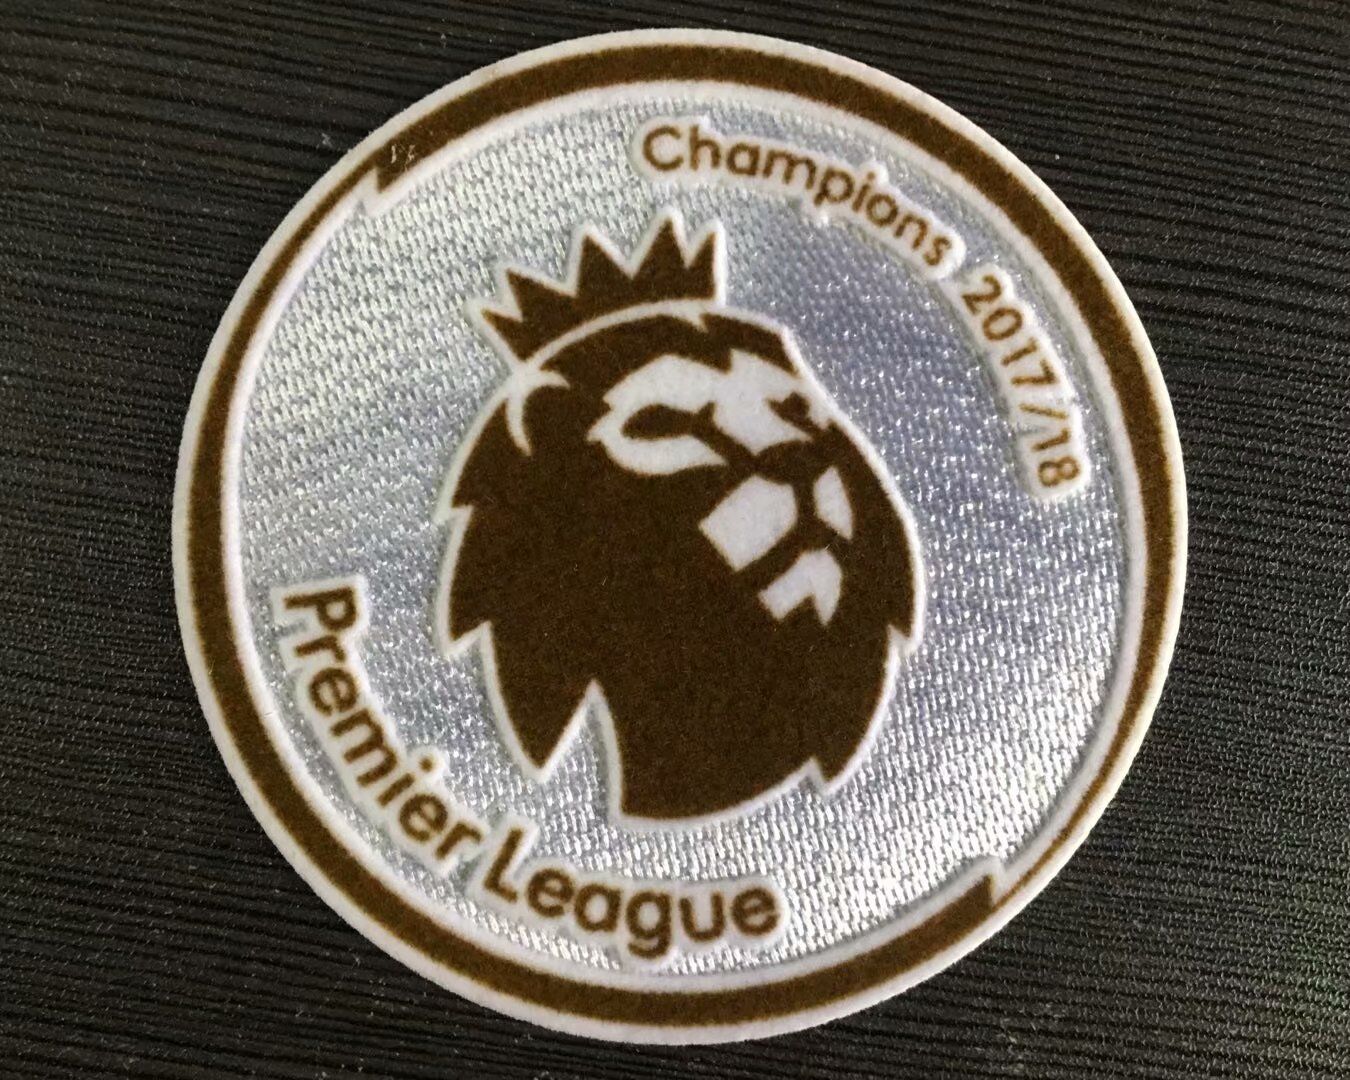 2017/18 Premier League Champion Patch